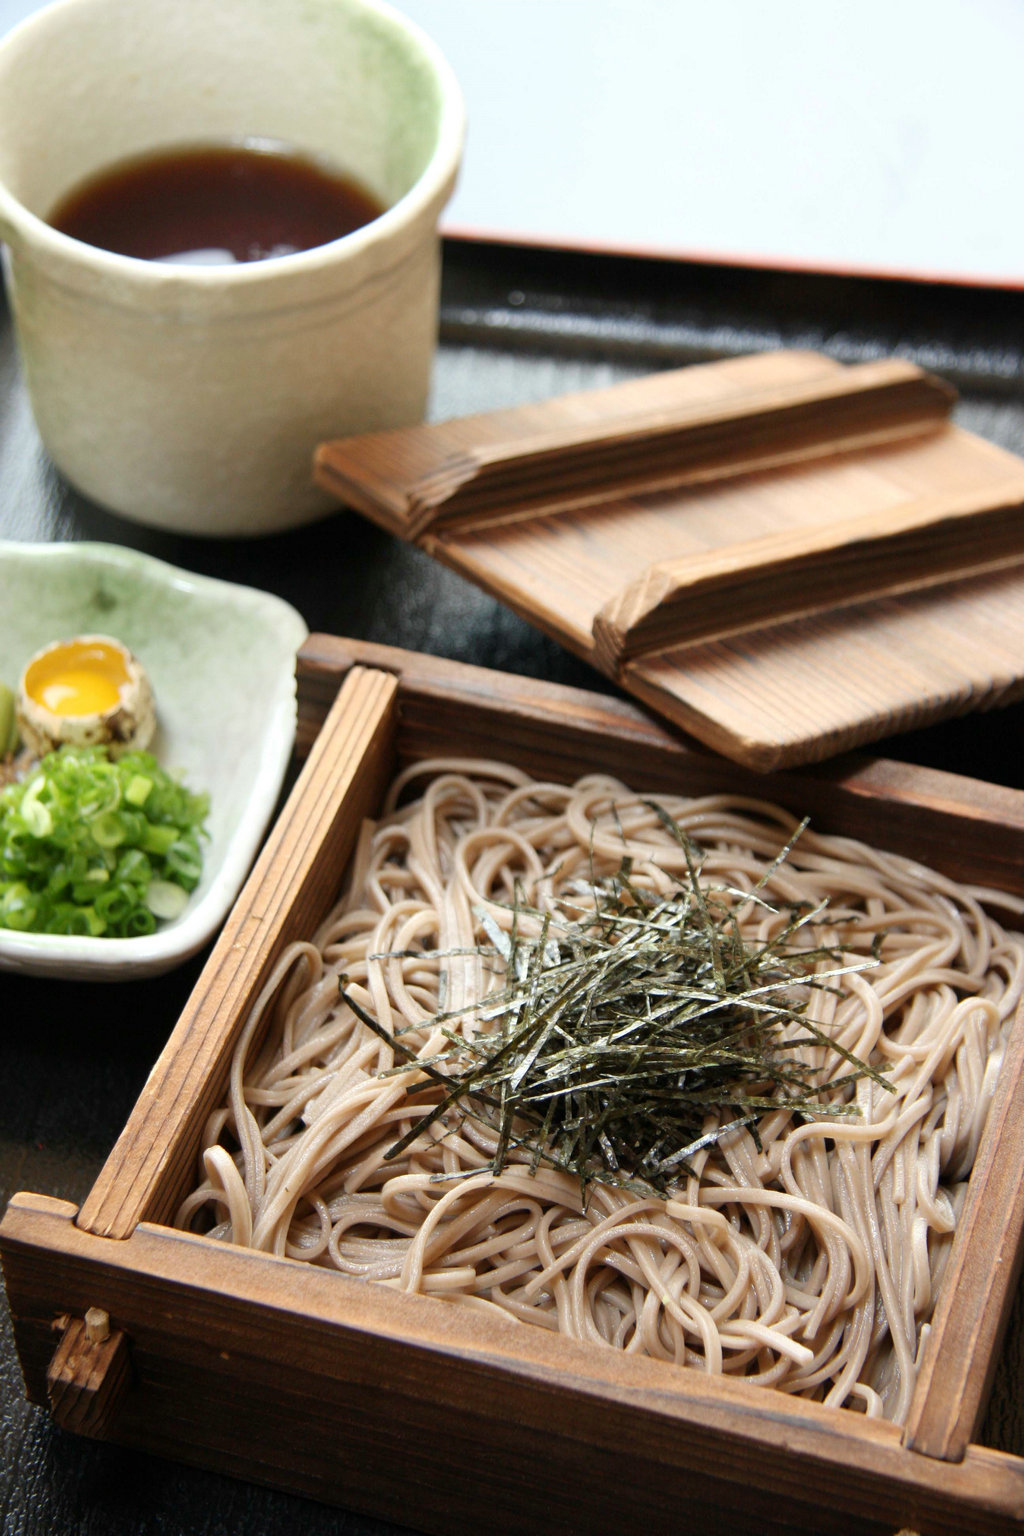 炎炎夏日，你可以在日本享受清凉的冷荞麦面(Soumen)。至今，吃这种荞麦面最爽的方法就是加入Nagashi Soumen仪式。在那里，荞麦面在凉水流动的动力下从对半劈开的毛竹筒中缓缓流出，你可以站在竹筒旁，手拿筷子和一碗酸甜可口的面汤，从竹筒中夹取流过的面条，蘸了酱汁之后食用。面条美味，乐趣无穷!